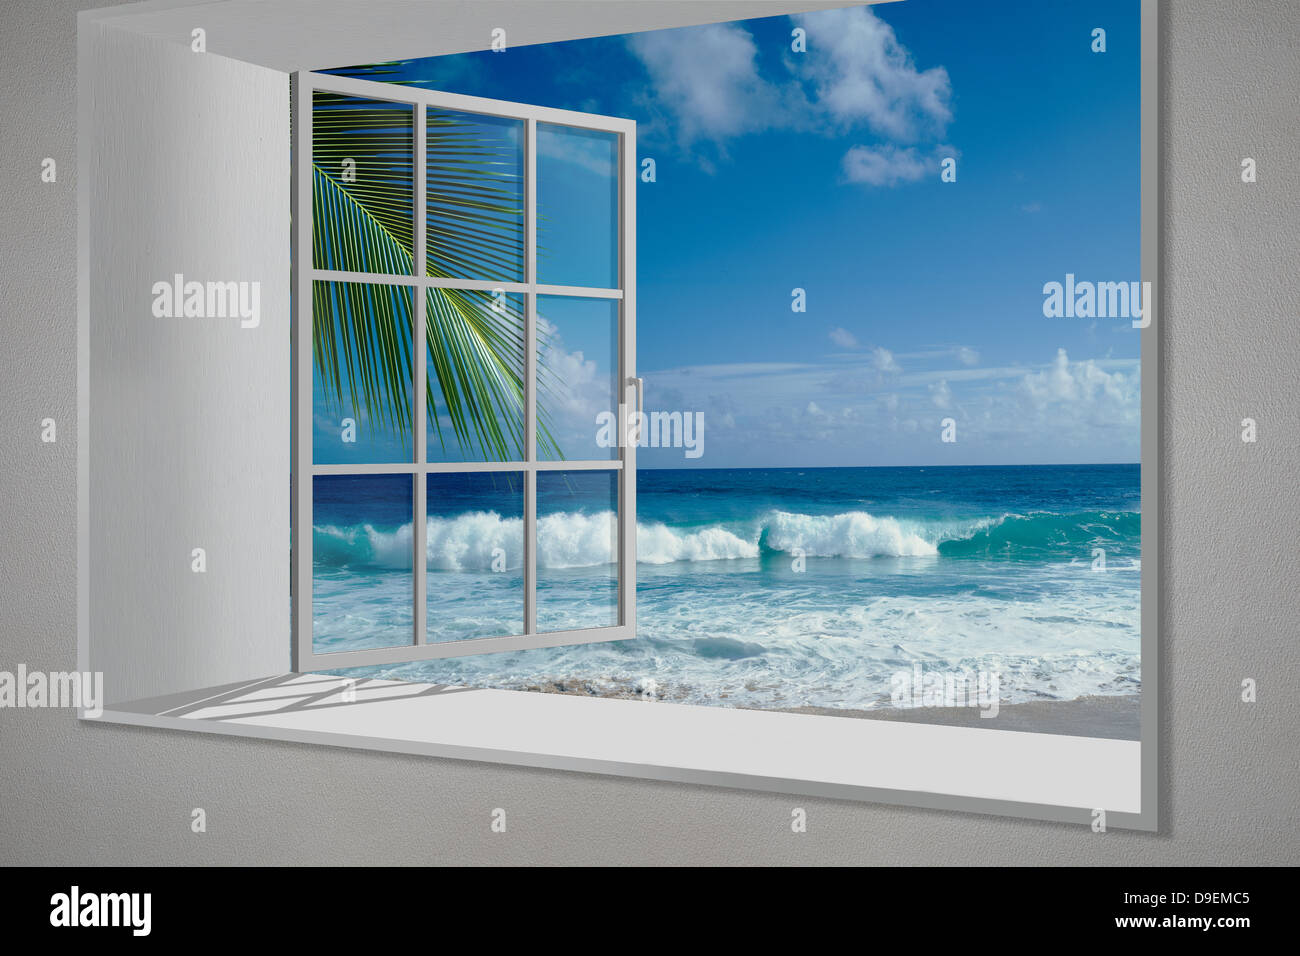 Hawaiian beach view from white window Stock Photo